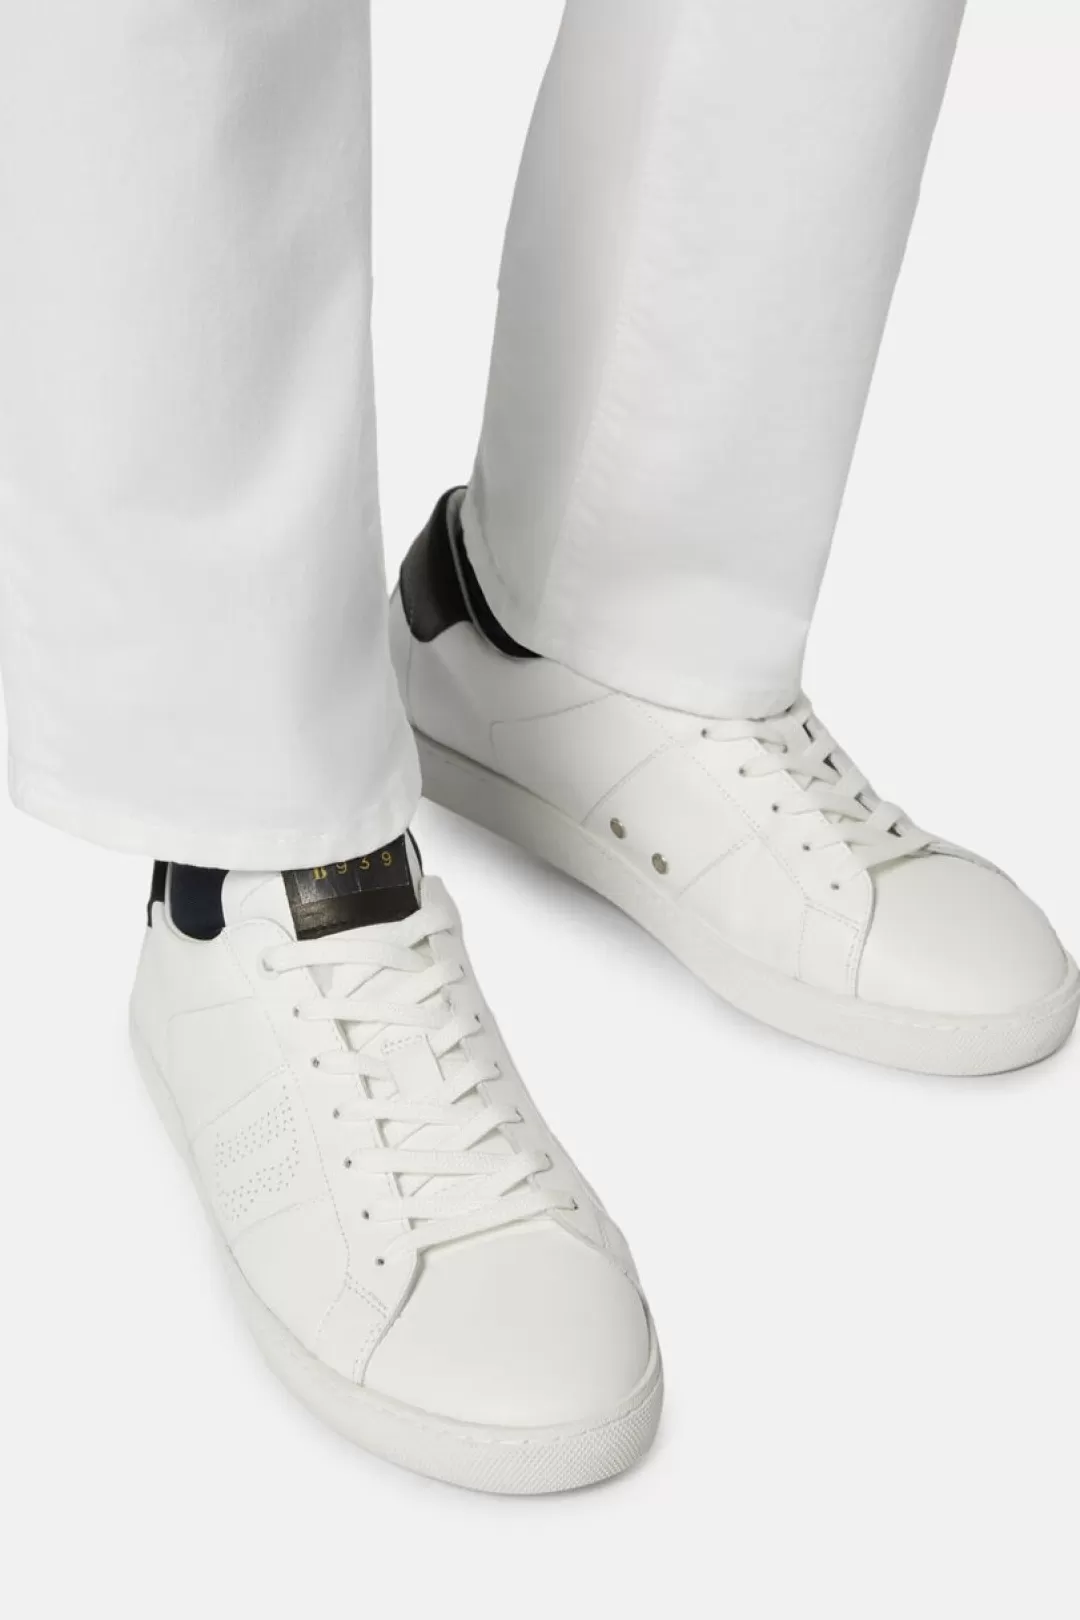 Boggi Sneakers Bianche E Nere In Pelle Nero - Bianco Outlet